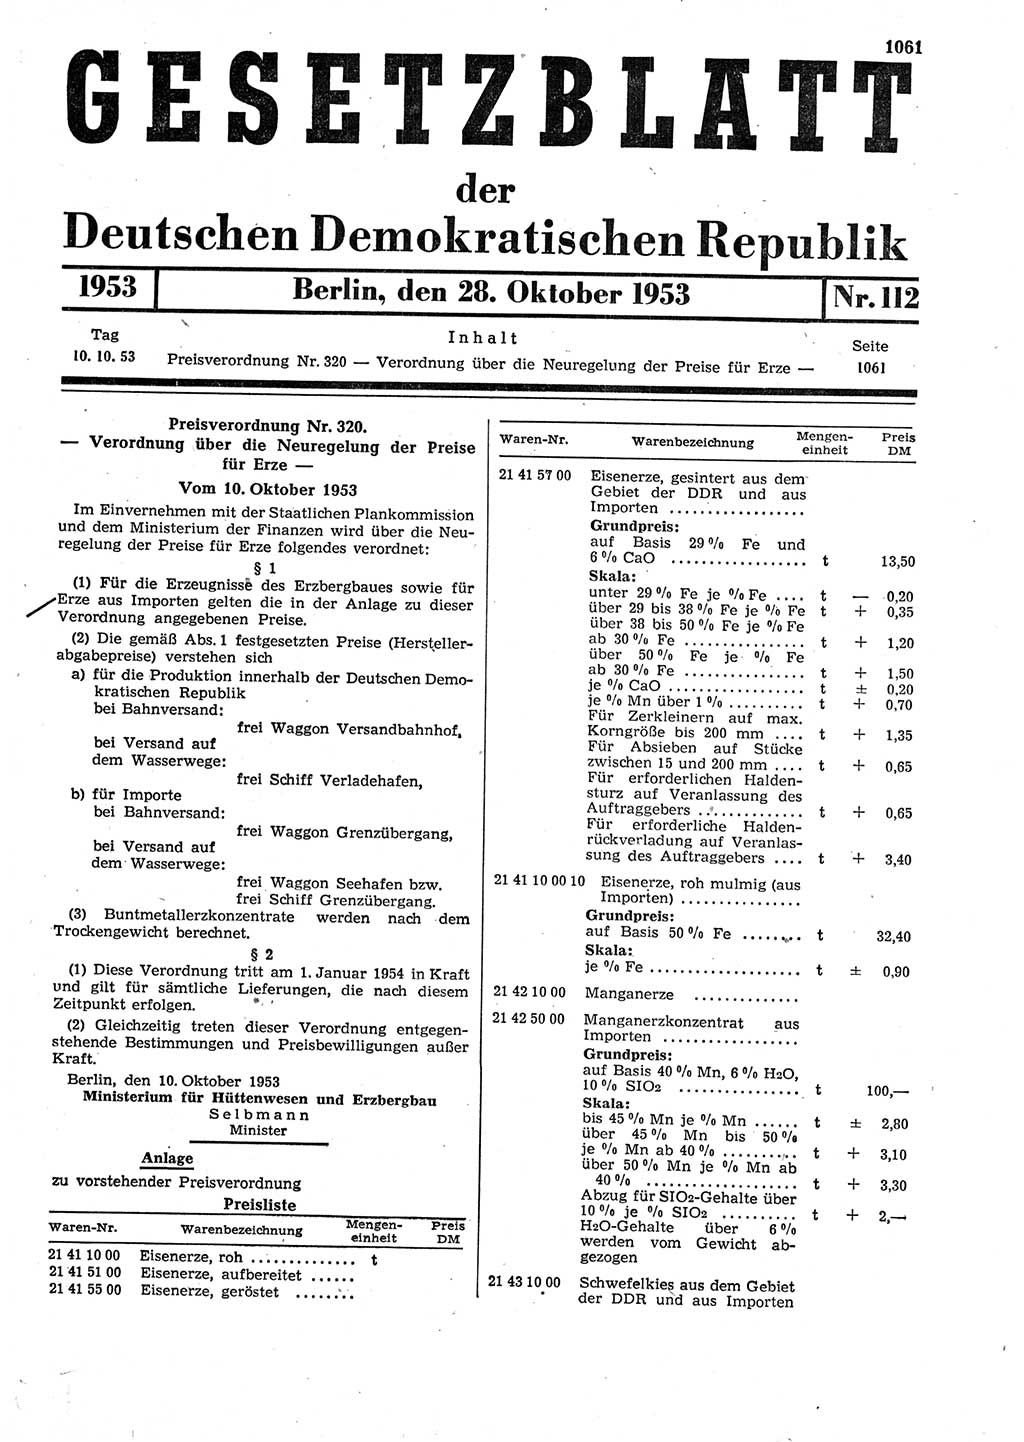 Gesetzblatt (GBl.) der Deutschen Demokratischen Republik (DDR) 1953, Seite 1061 (GBl. DDR 1953, S. 1061)